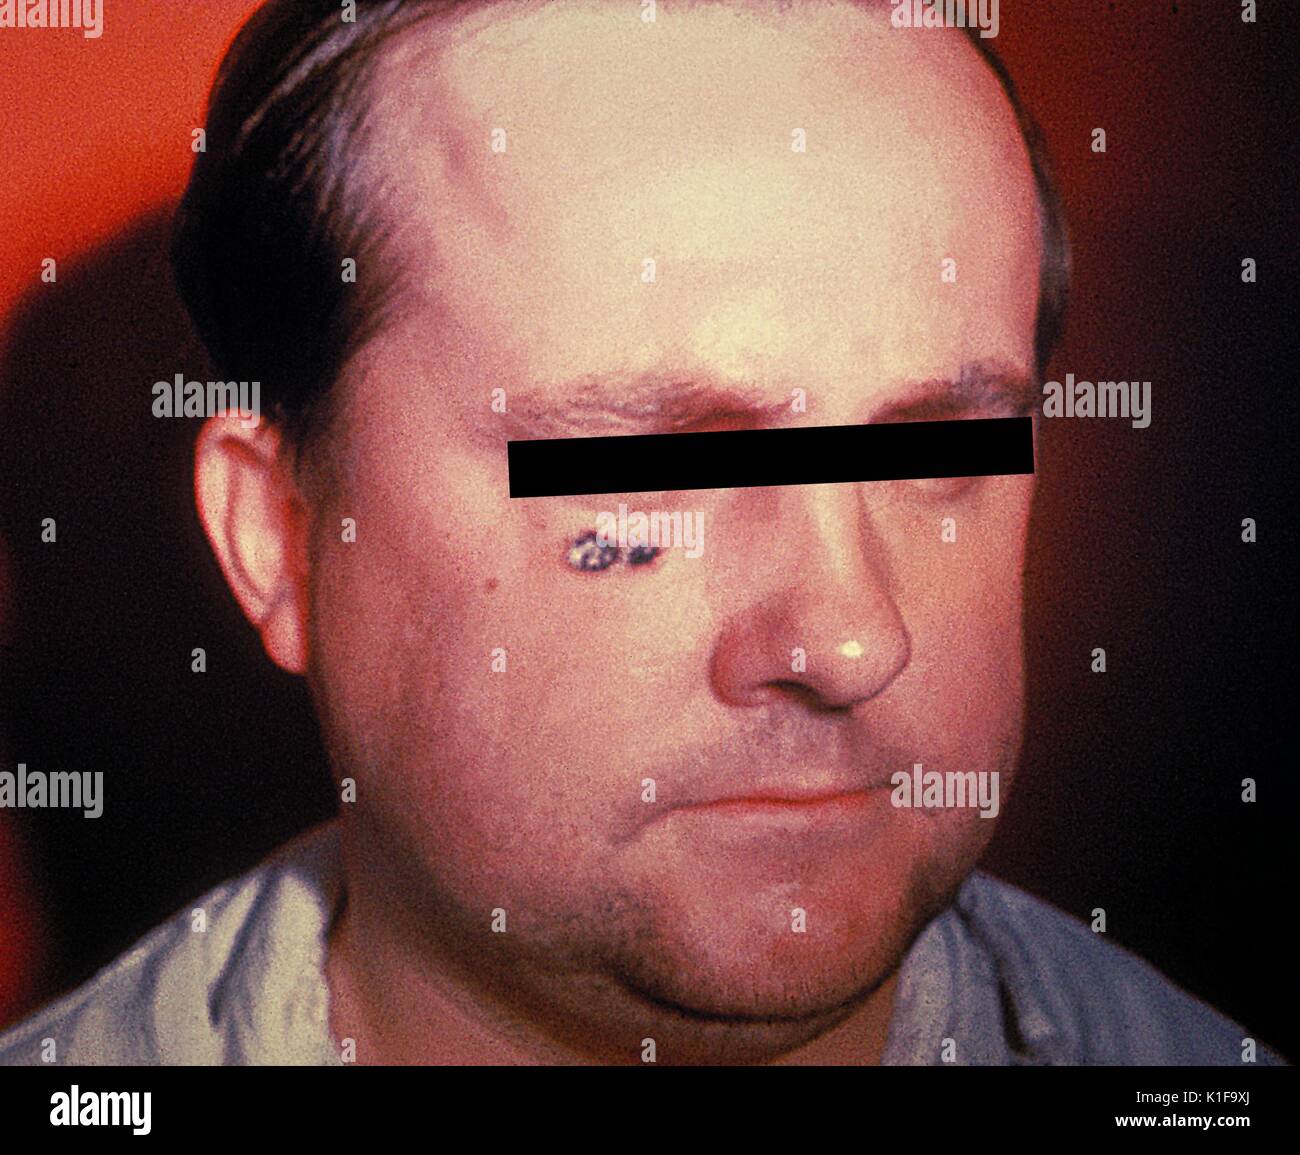 Antrace lesione della pelle sul volto di uomo immagine cutanea cortesia CDC, 1974. Foto Stock